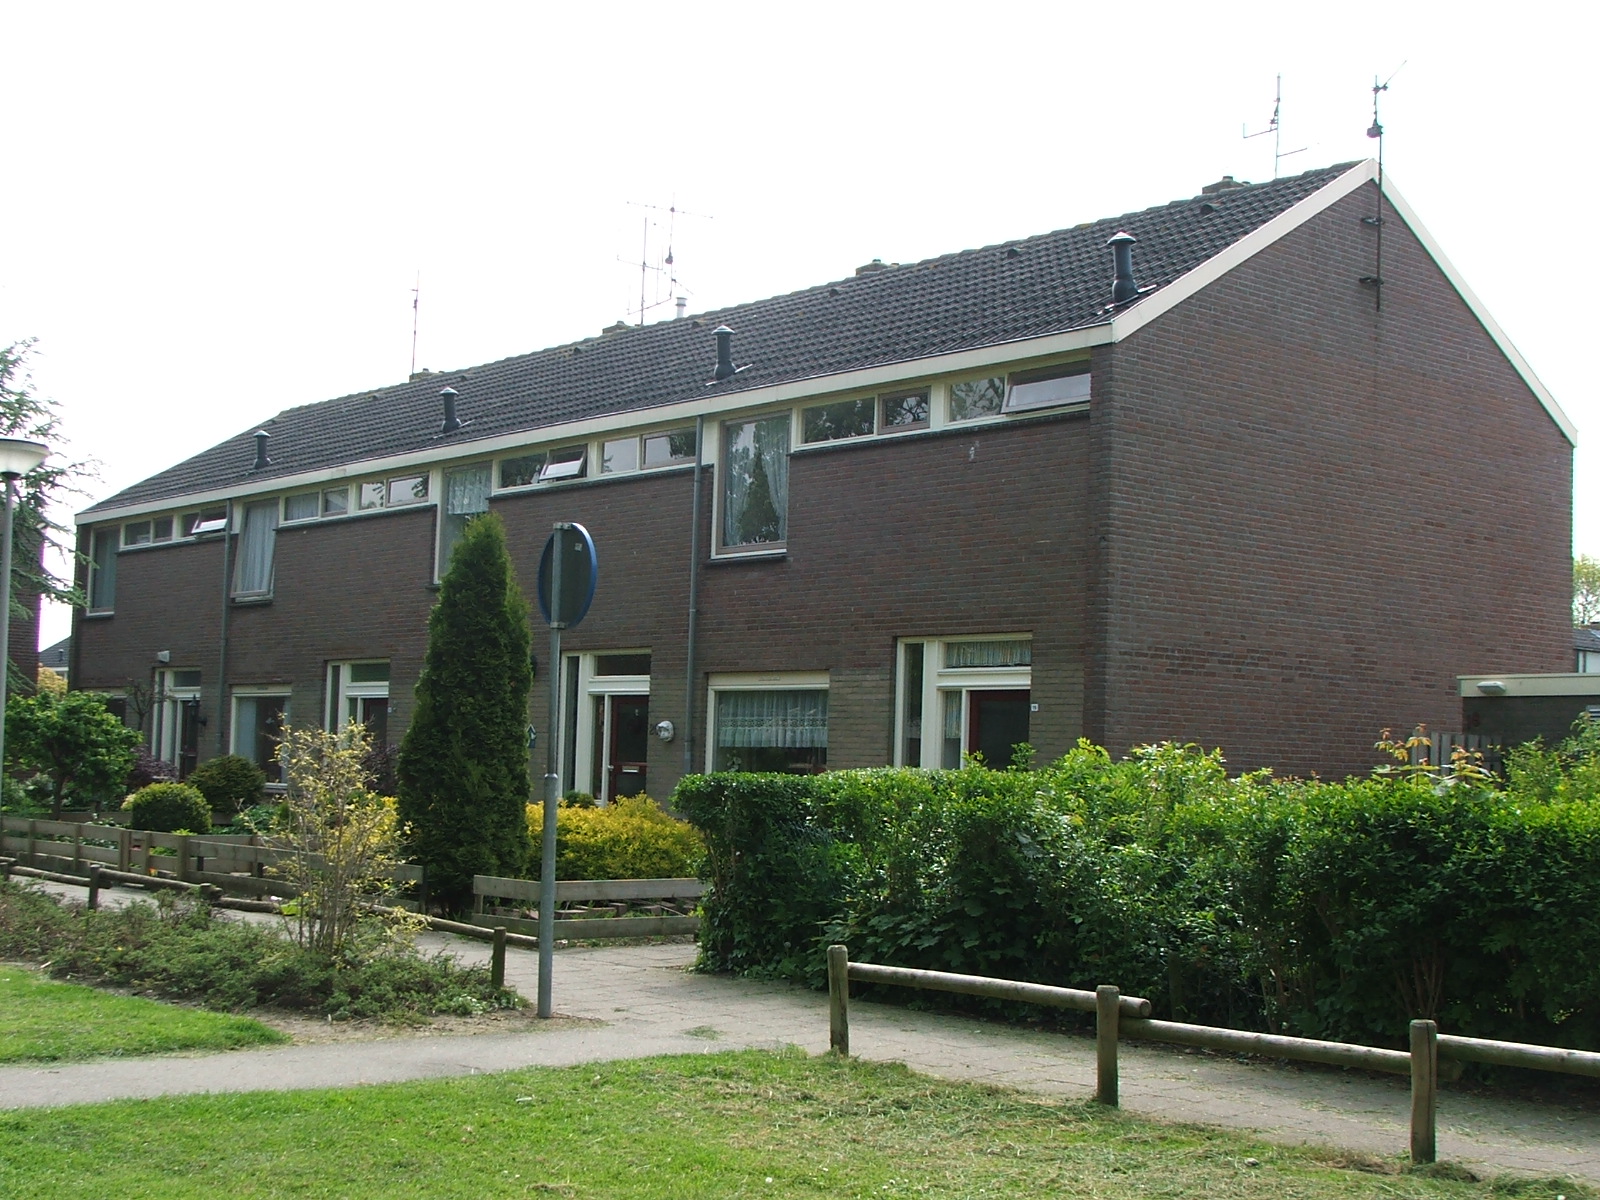 Cederplein 21, 2451 XS Leimuiden, Nederland